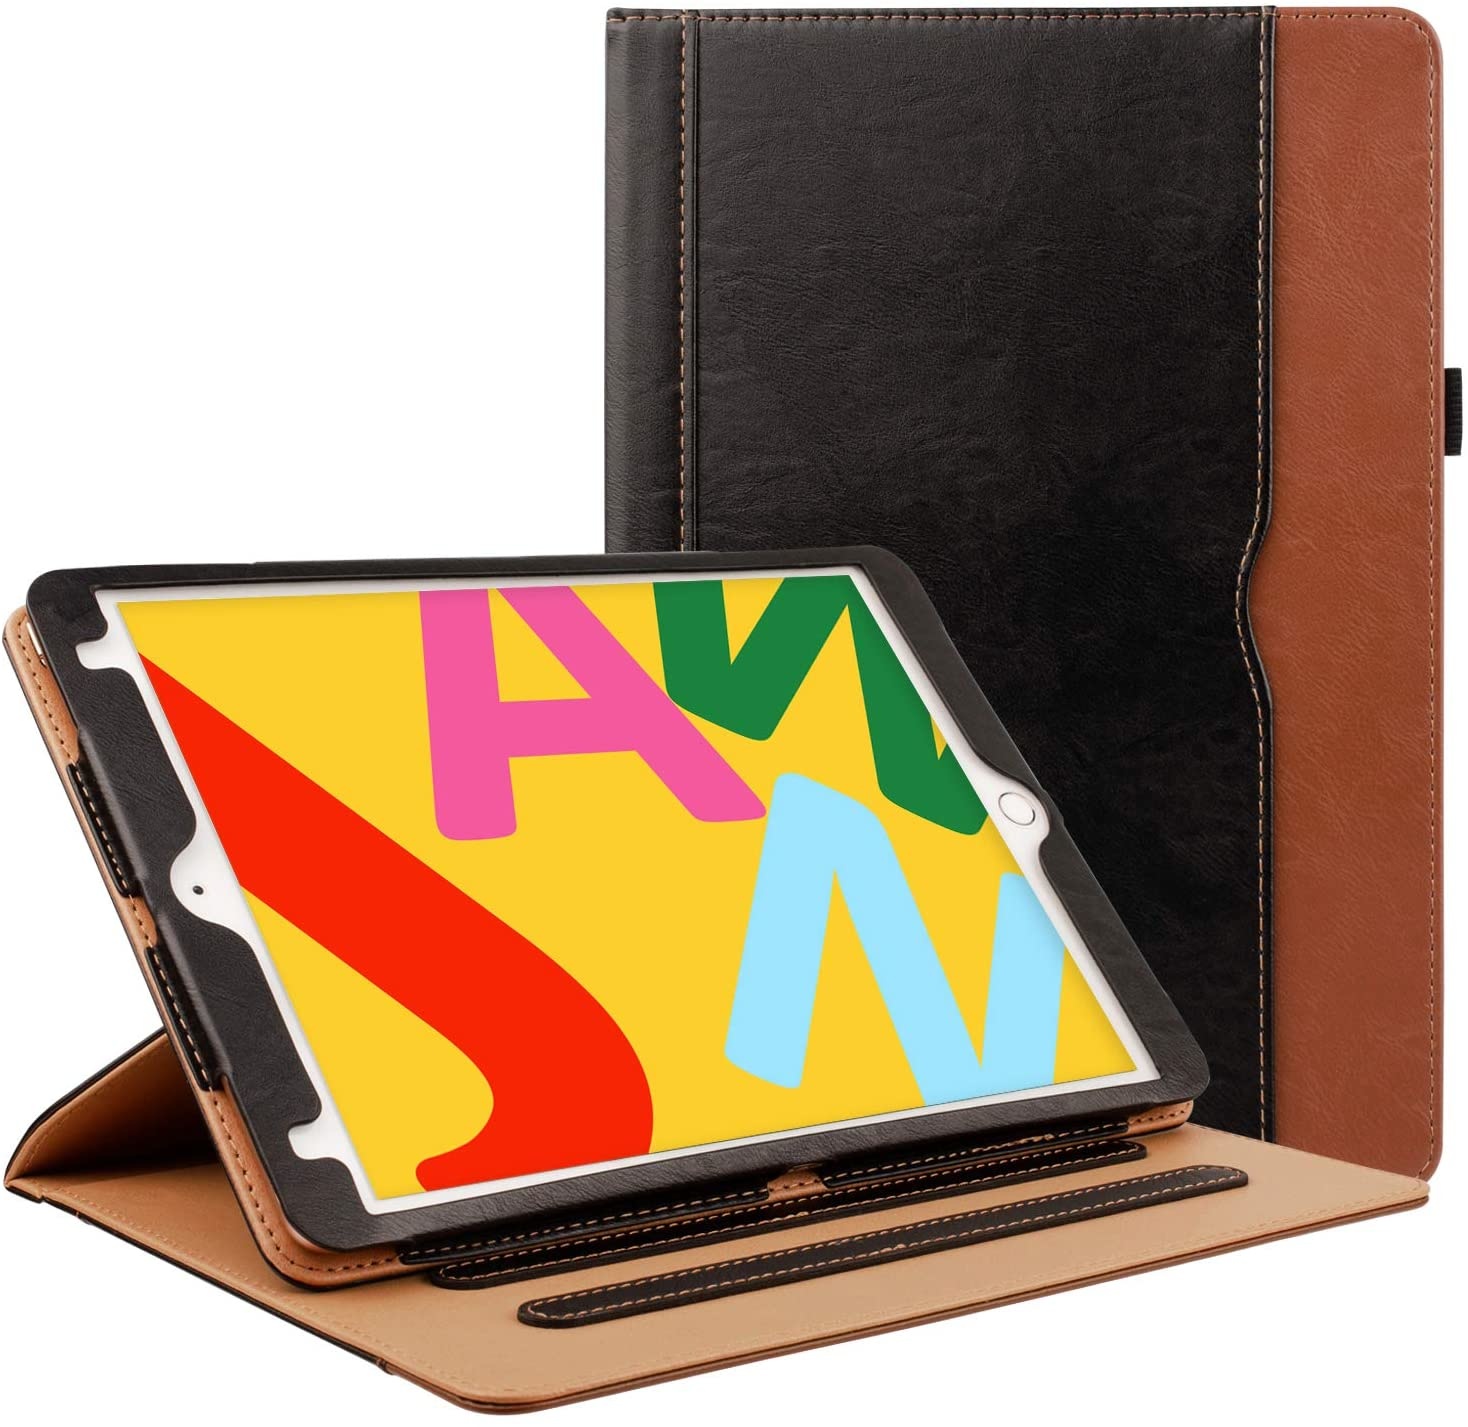 iPad Mini 4 luxe hoes leer bruin zwart - Gratis Verzending - iPadspullekes